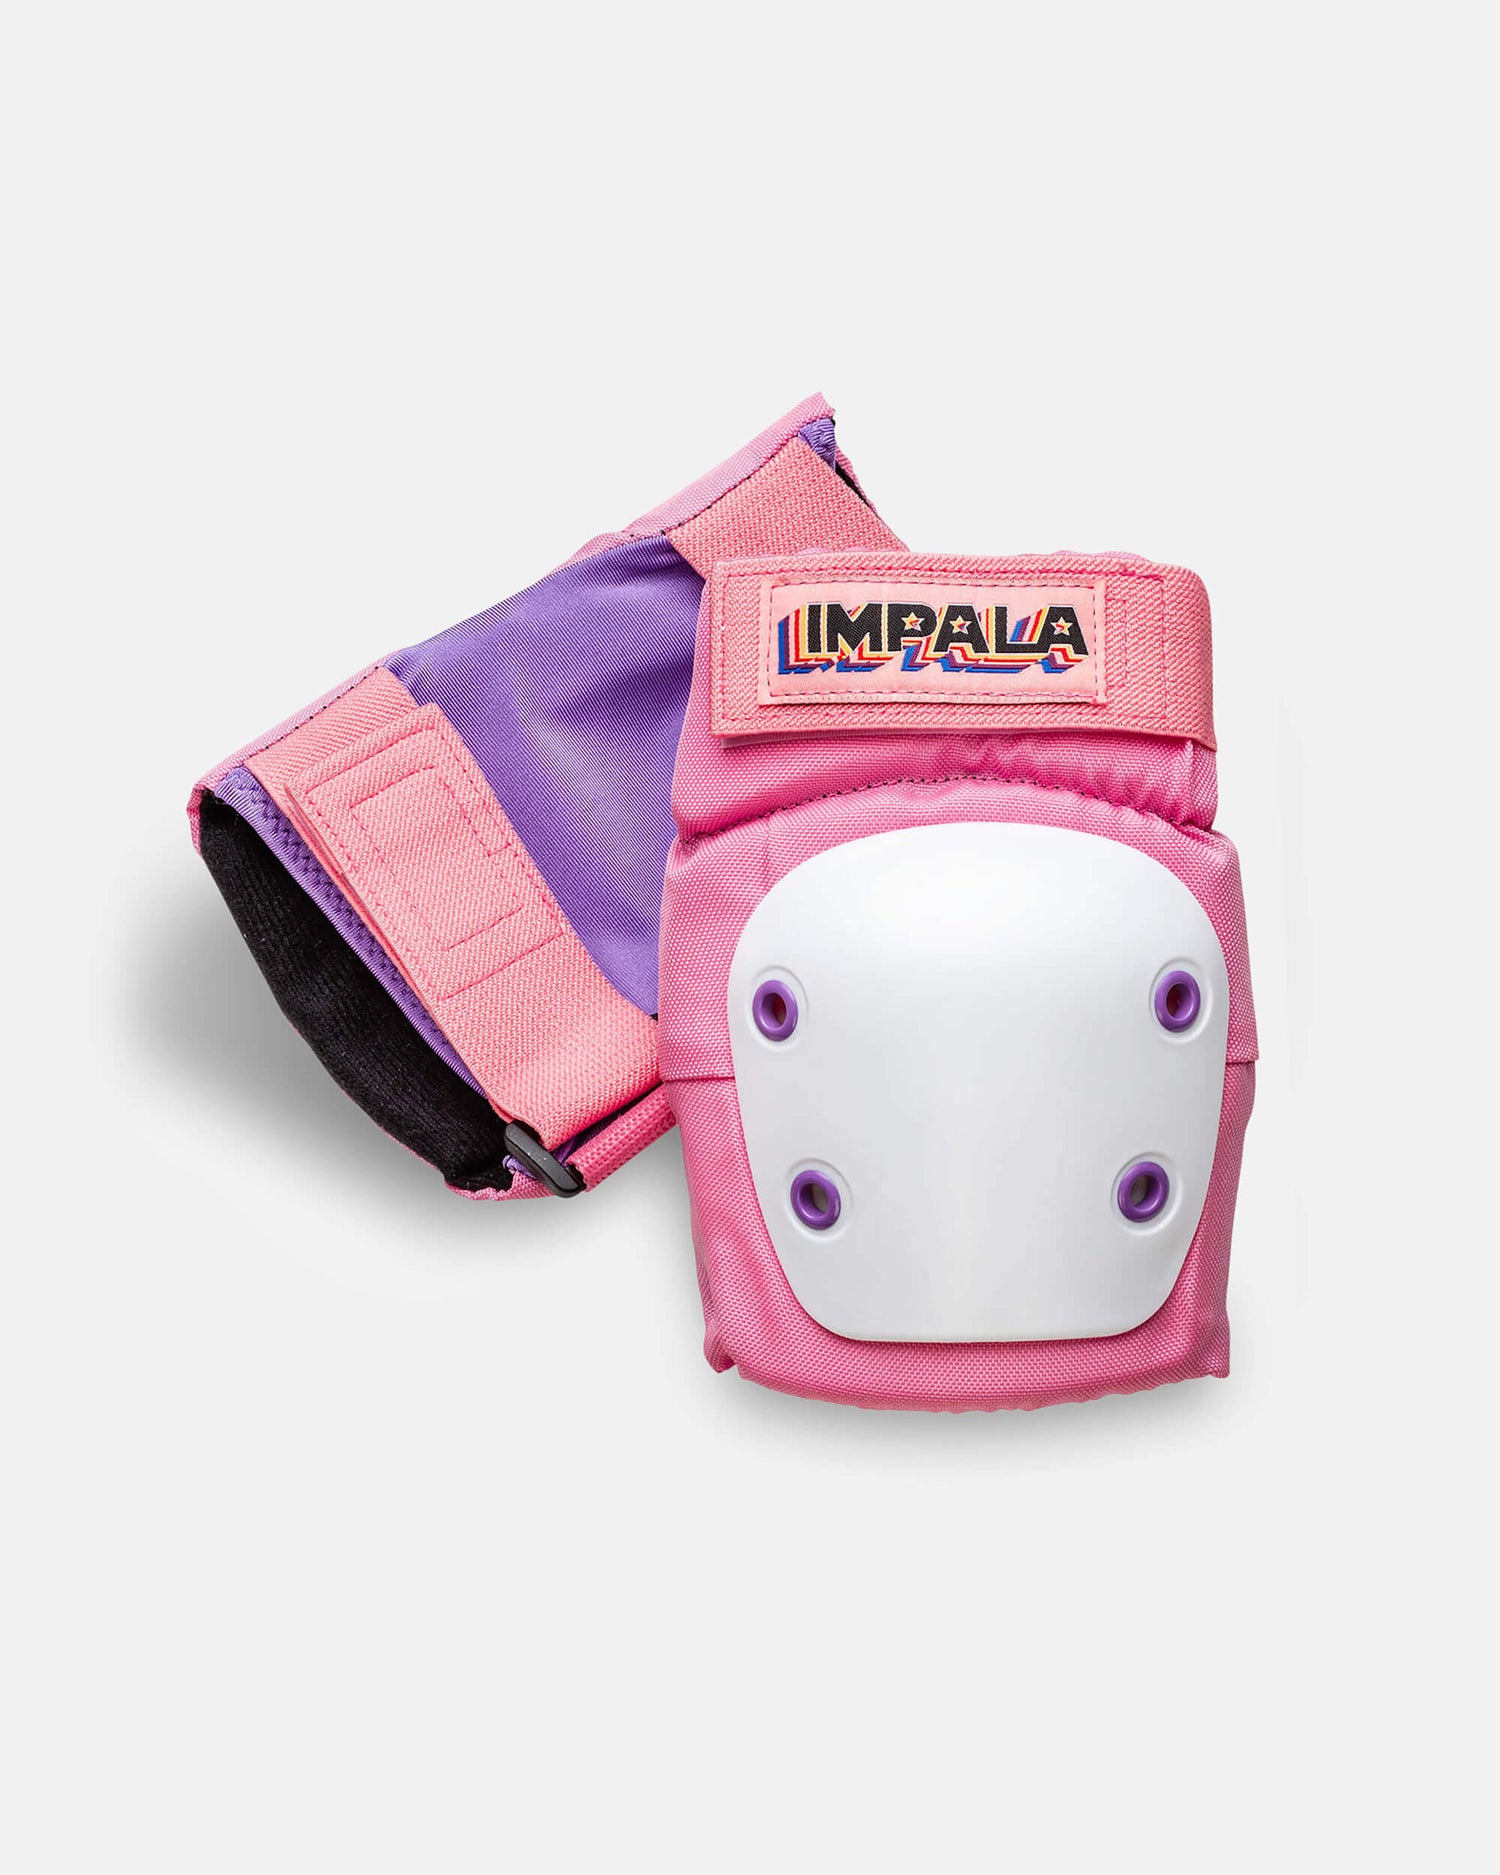 Beschermingspakket voor volwassenen Pink - en kniebeschermers - Impala Skate Europa